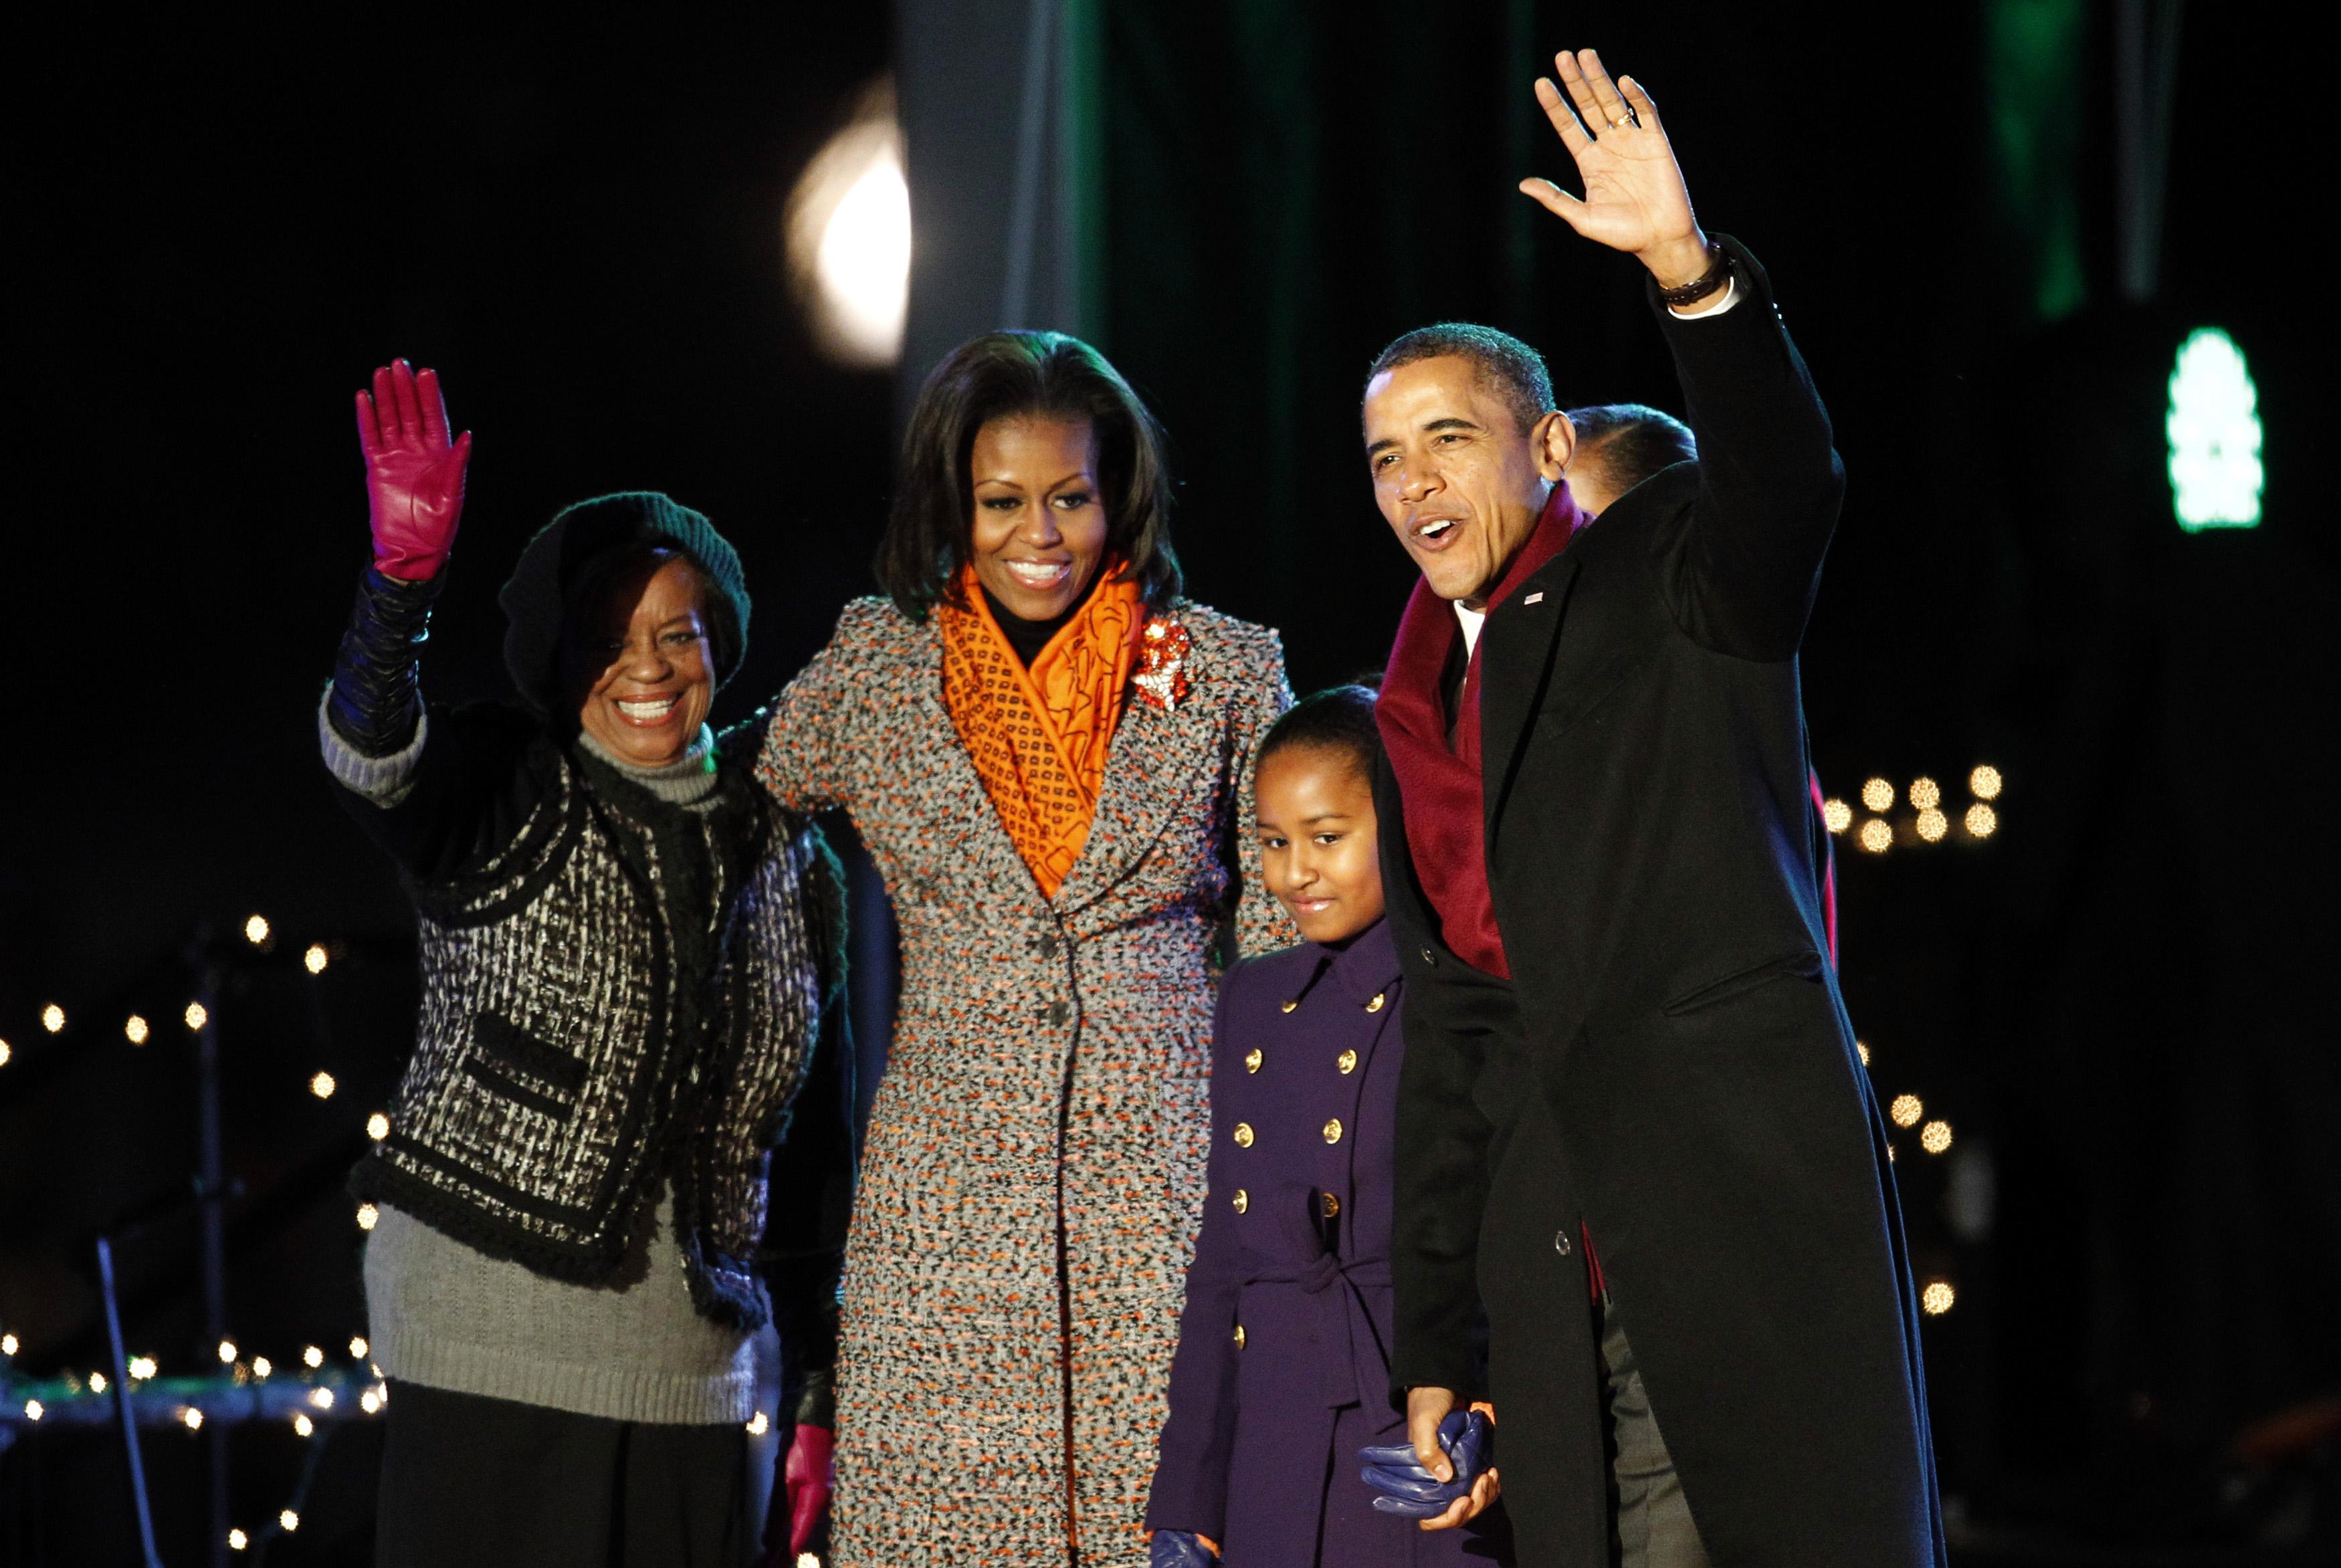 Μπαράκ και Μισέλ Ομπάμα, μαζί με τις κόρες τους Σάσα και Μαλια